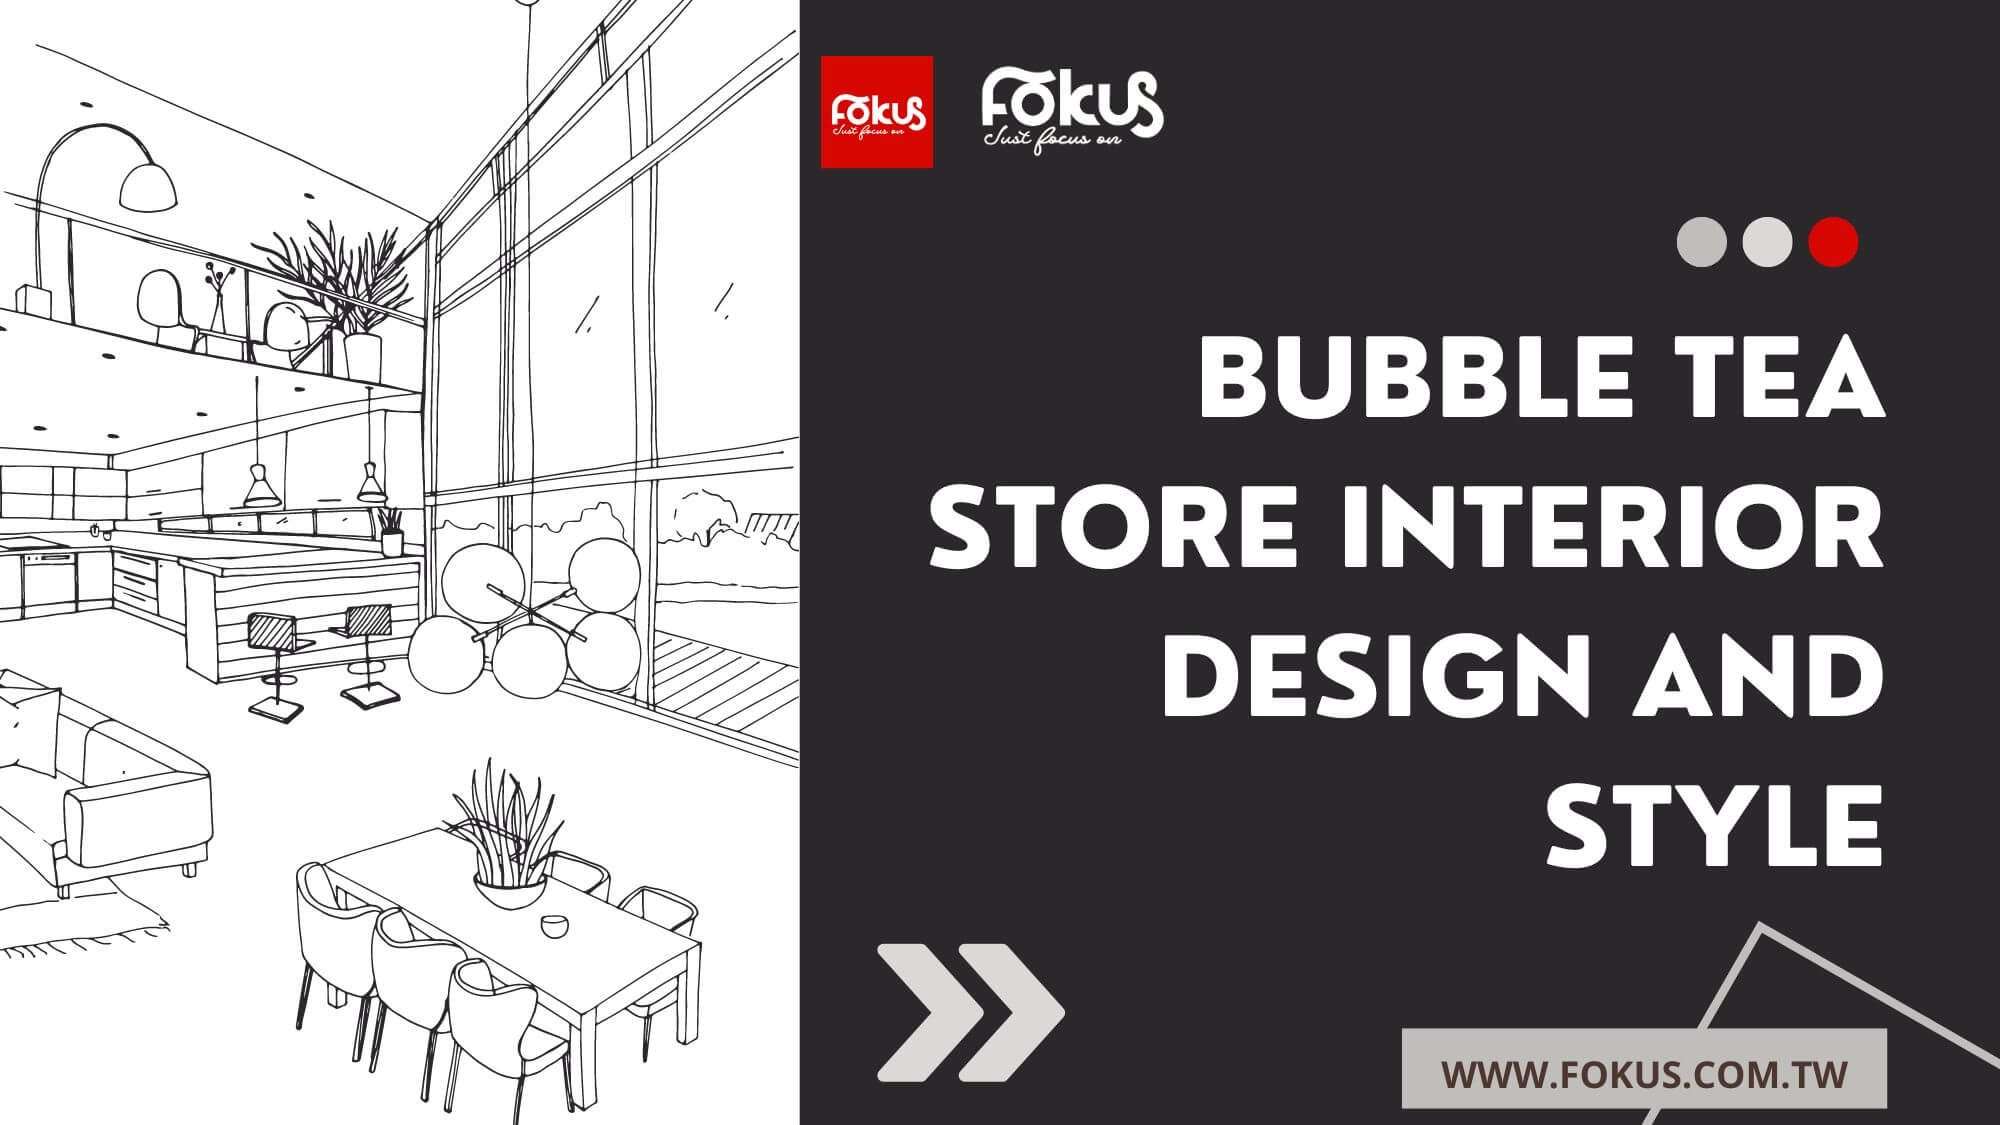 Bubble tea store interior design and style